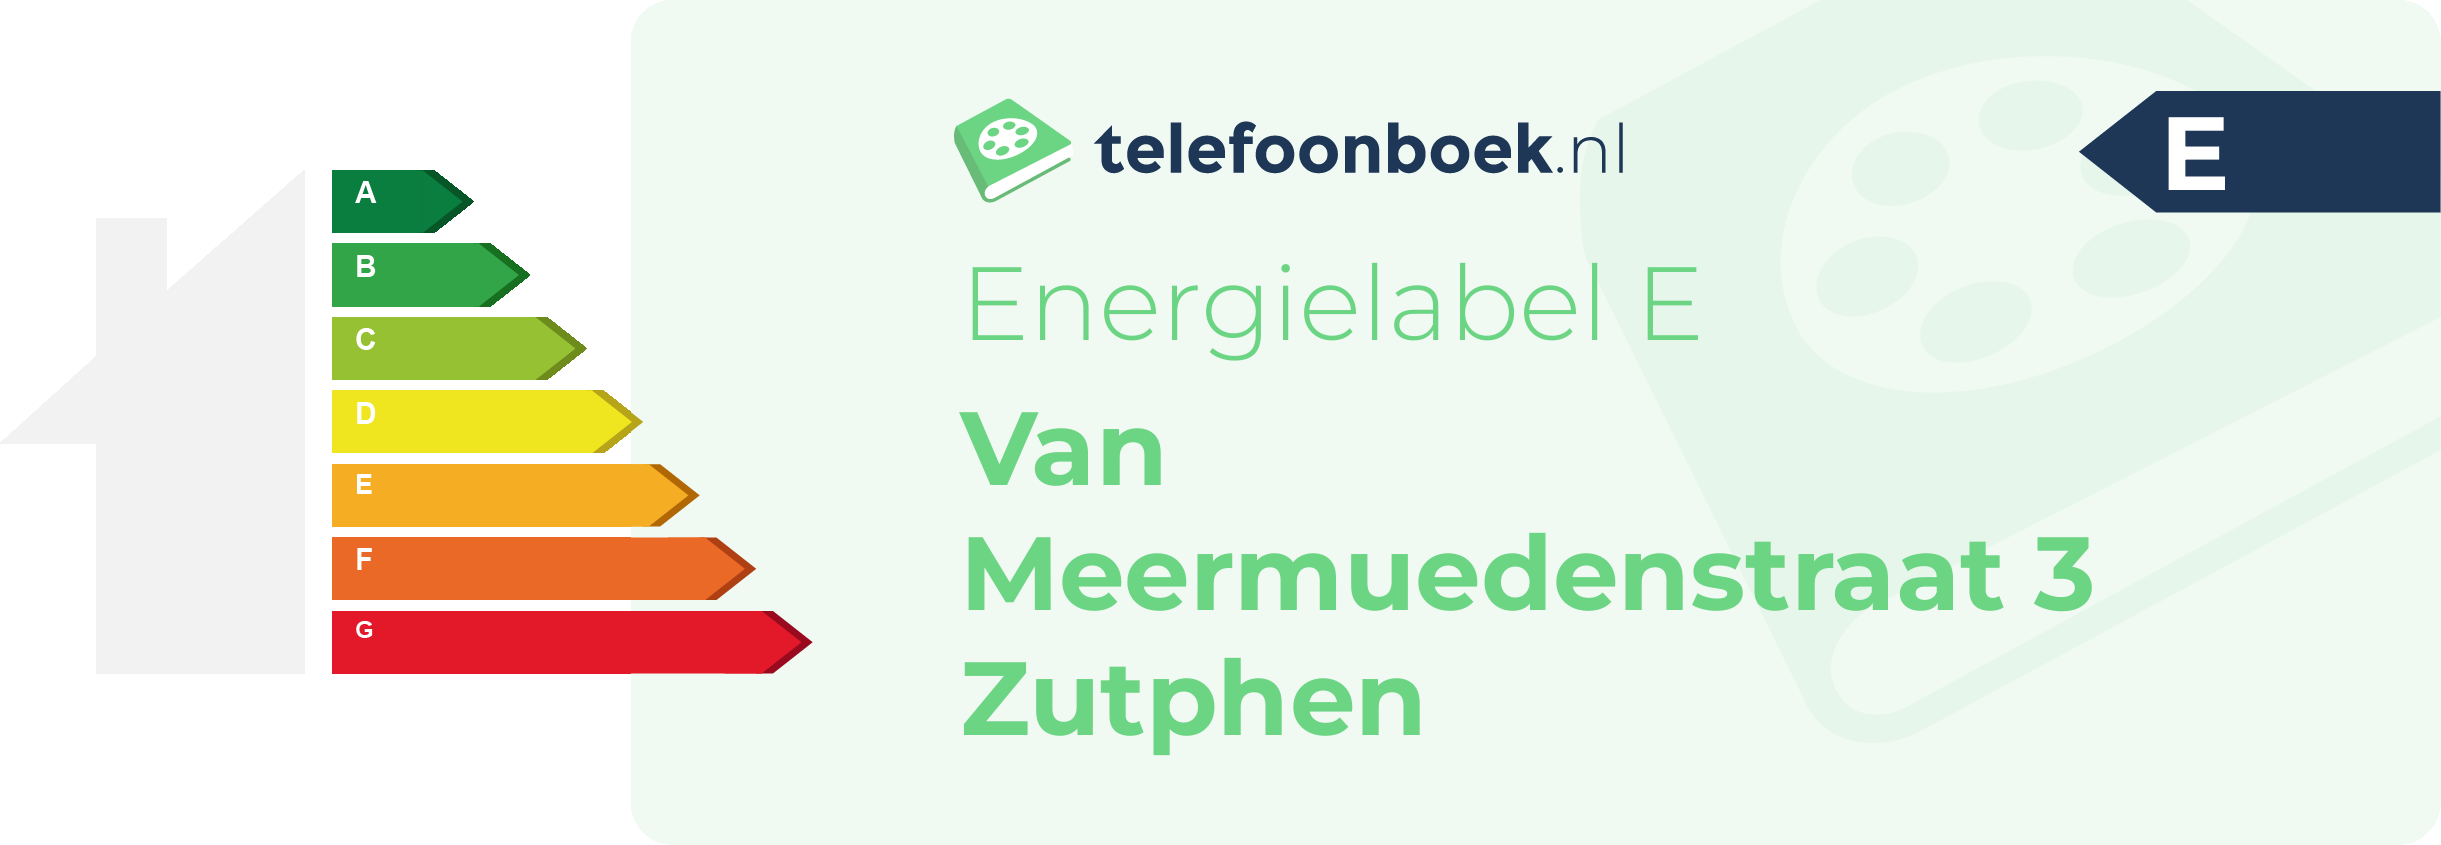 Energielabel Van Meermuedenstraat 3 Zutphen